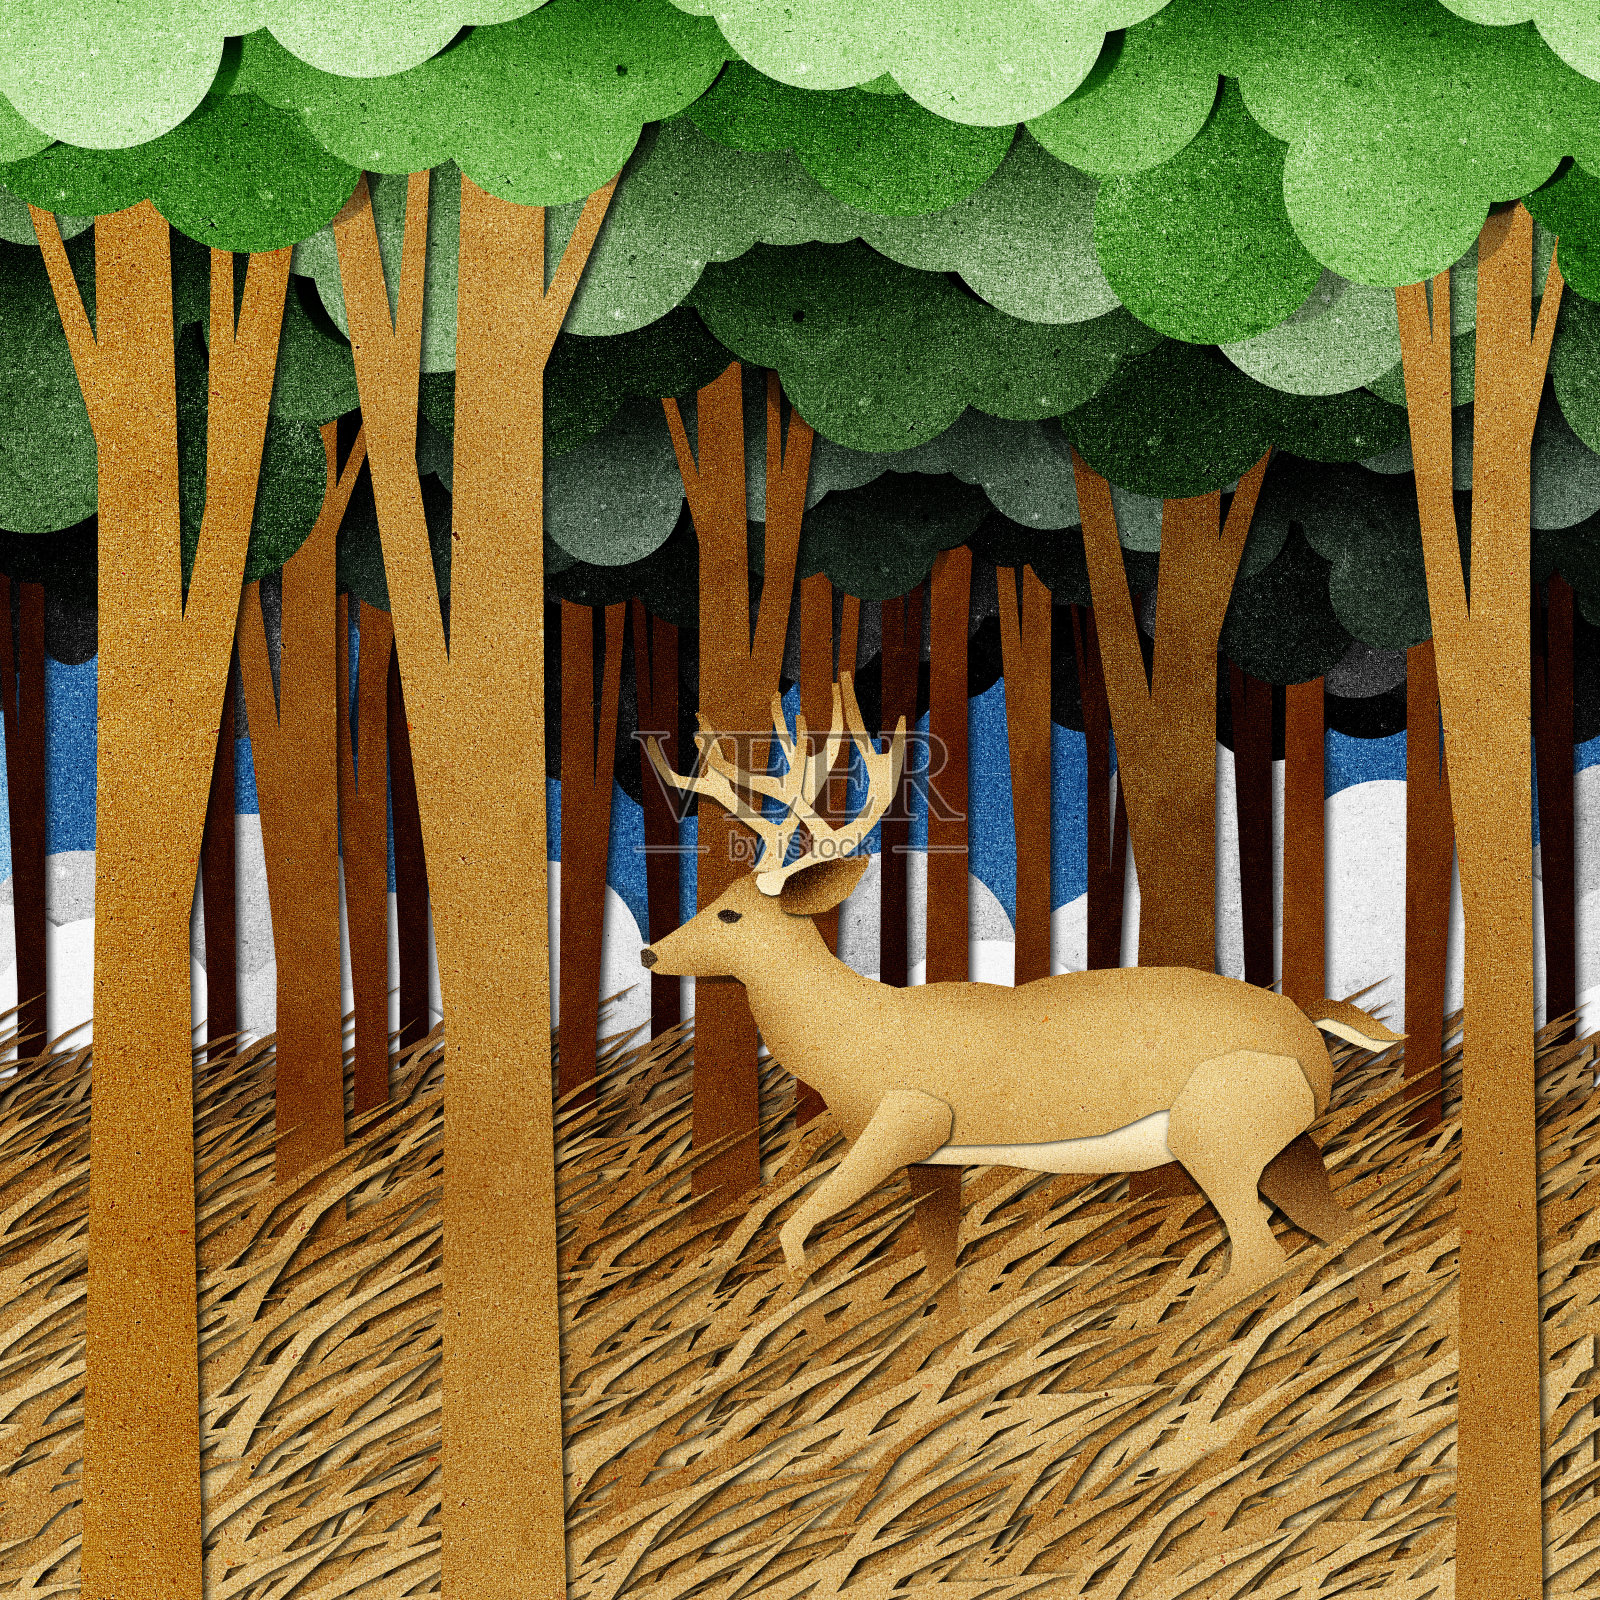 鹿用再生纸制作工艺背景插画图片素材